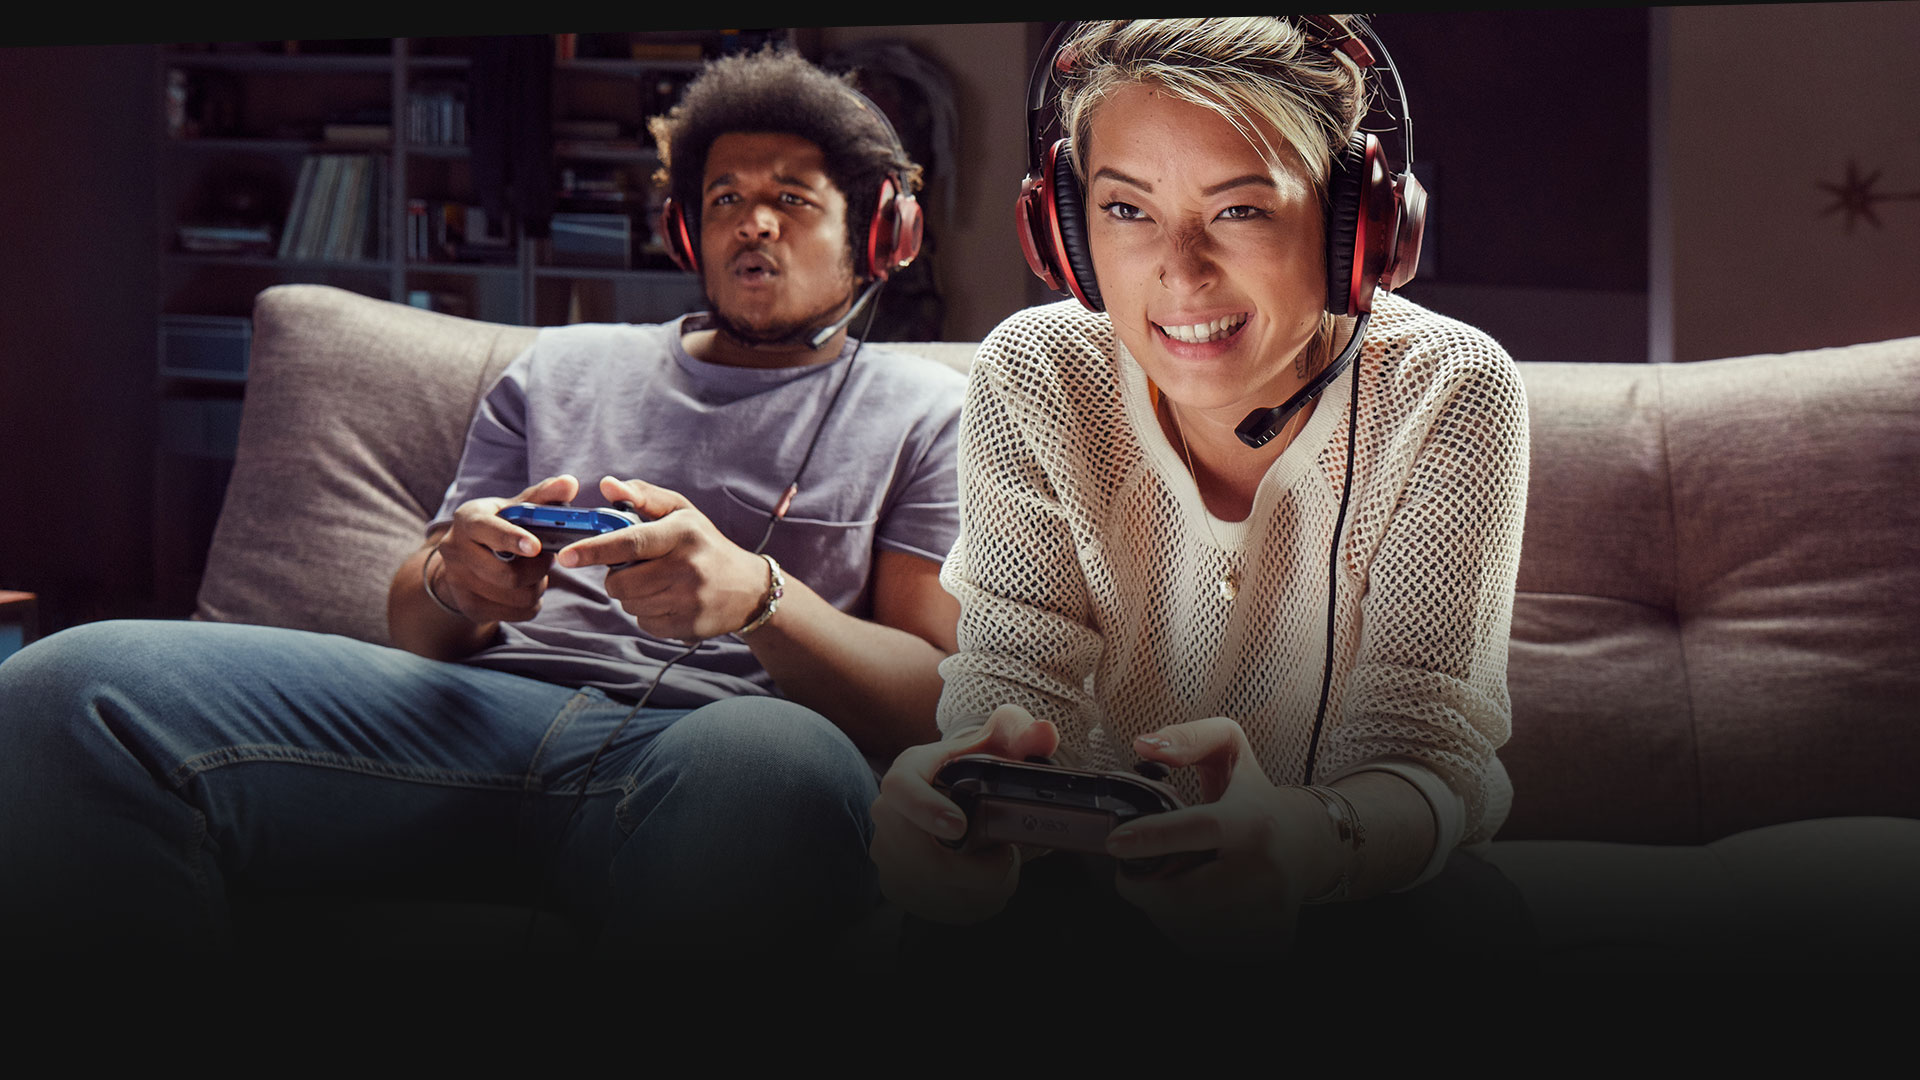 Bir koltuğun üzerinde Xbox one oynayan mikrofonlu kulaklık takan iki kişi